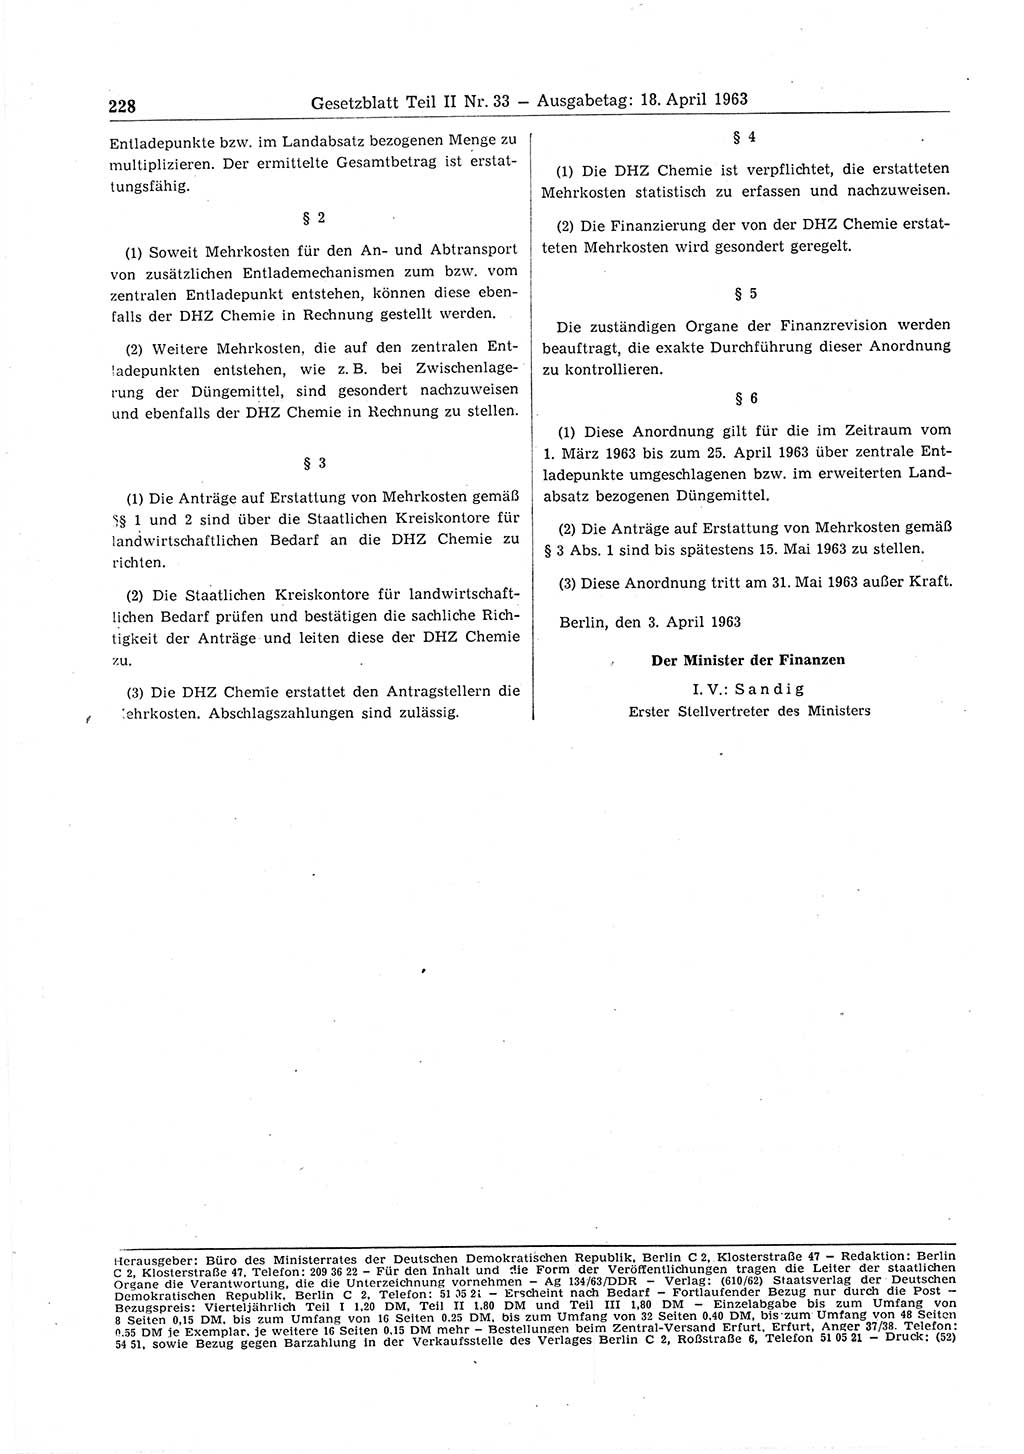 Gesetzblatt (GBl.) der Deutschen Demokratischen Republik (DDR) Teil ⅠⅠ 1963, Seite 228 (GBl. DDR ⅠⅠ 1963, S. 228)